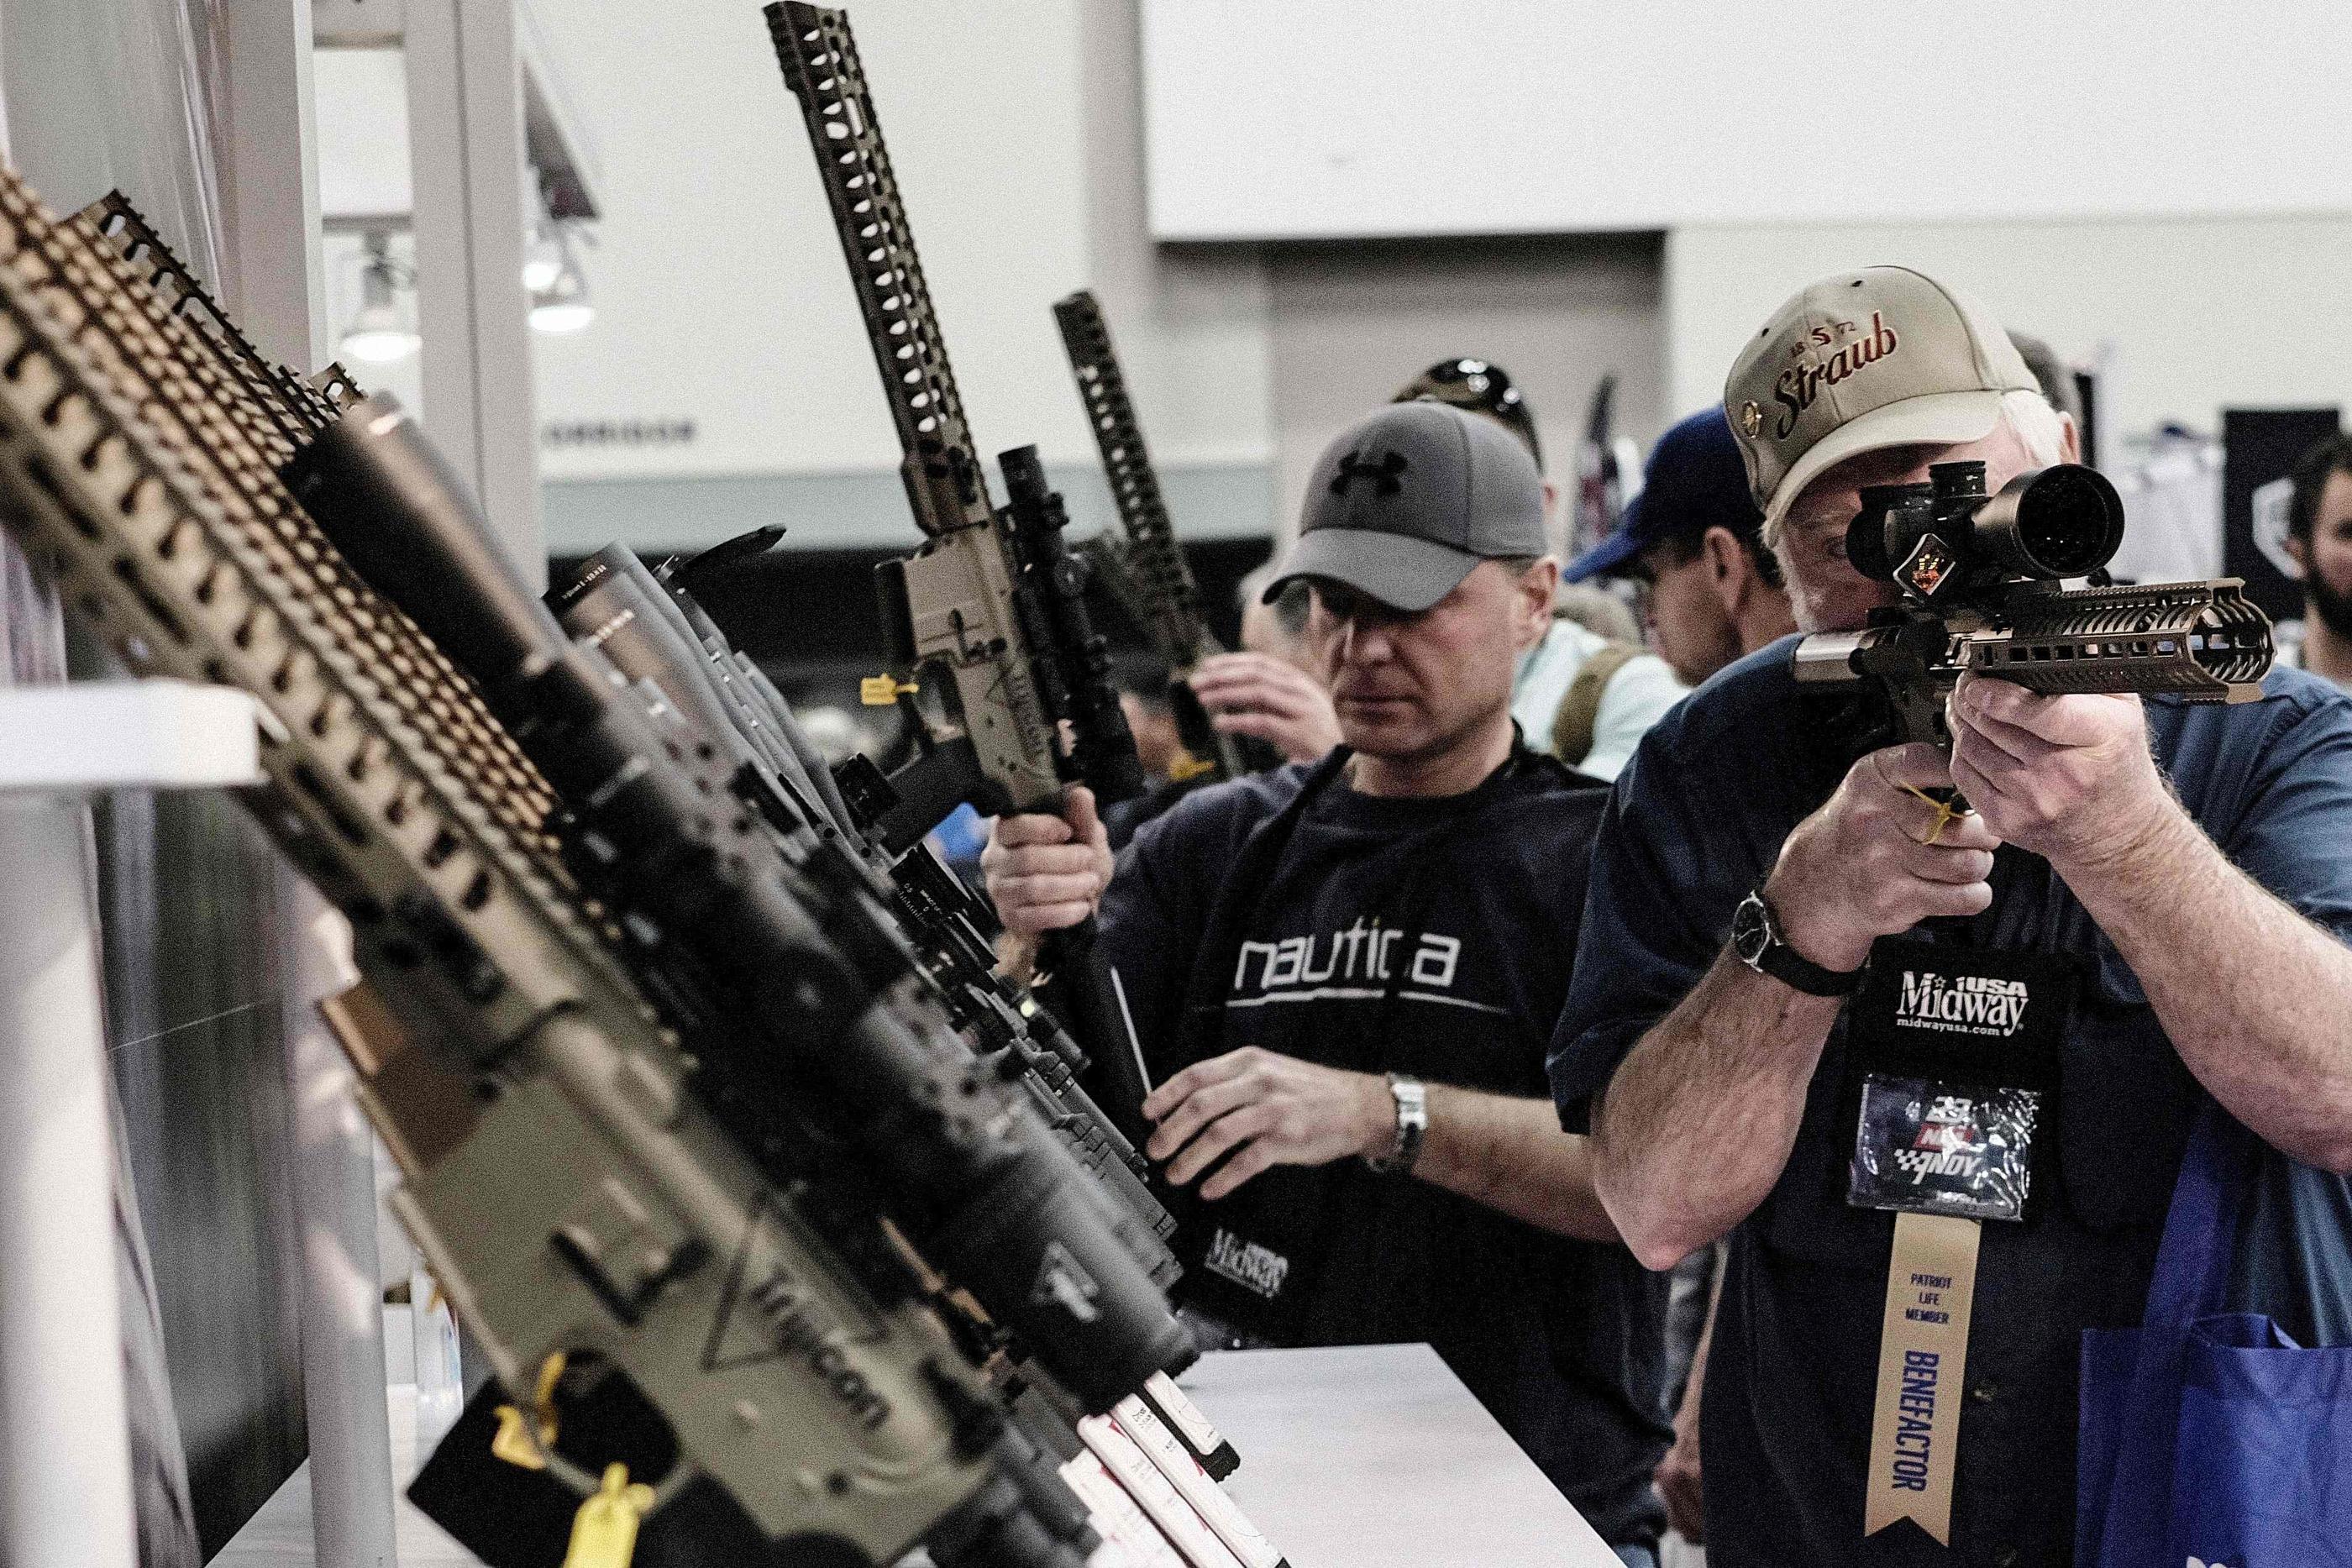 Armes à feu: Visa renonce pour l'instant à catégoriser les achats dans les  magasins d'armes